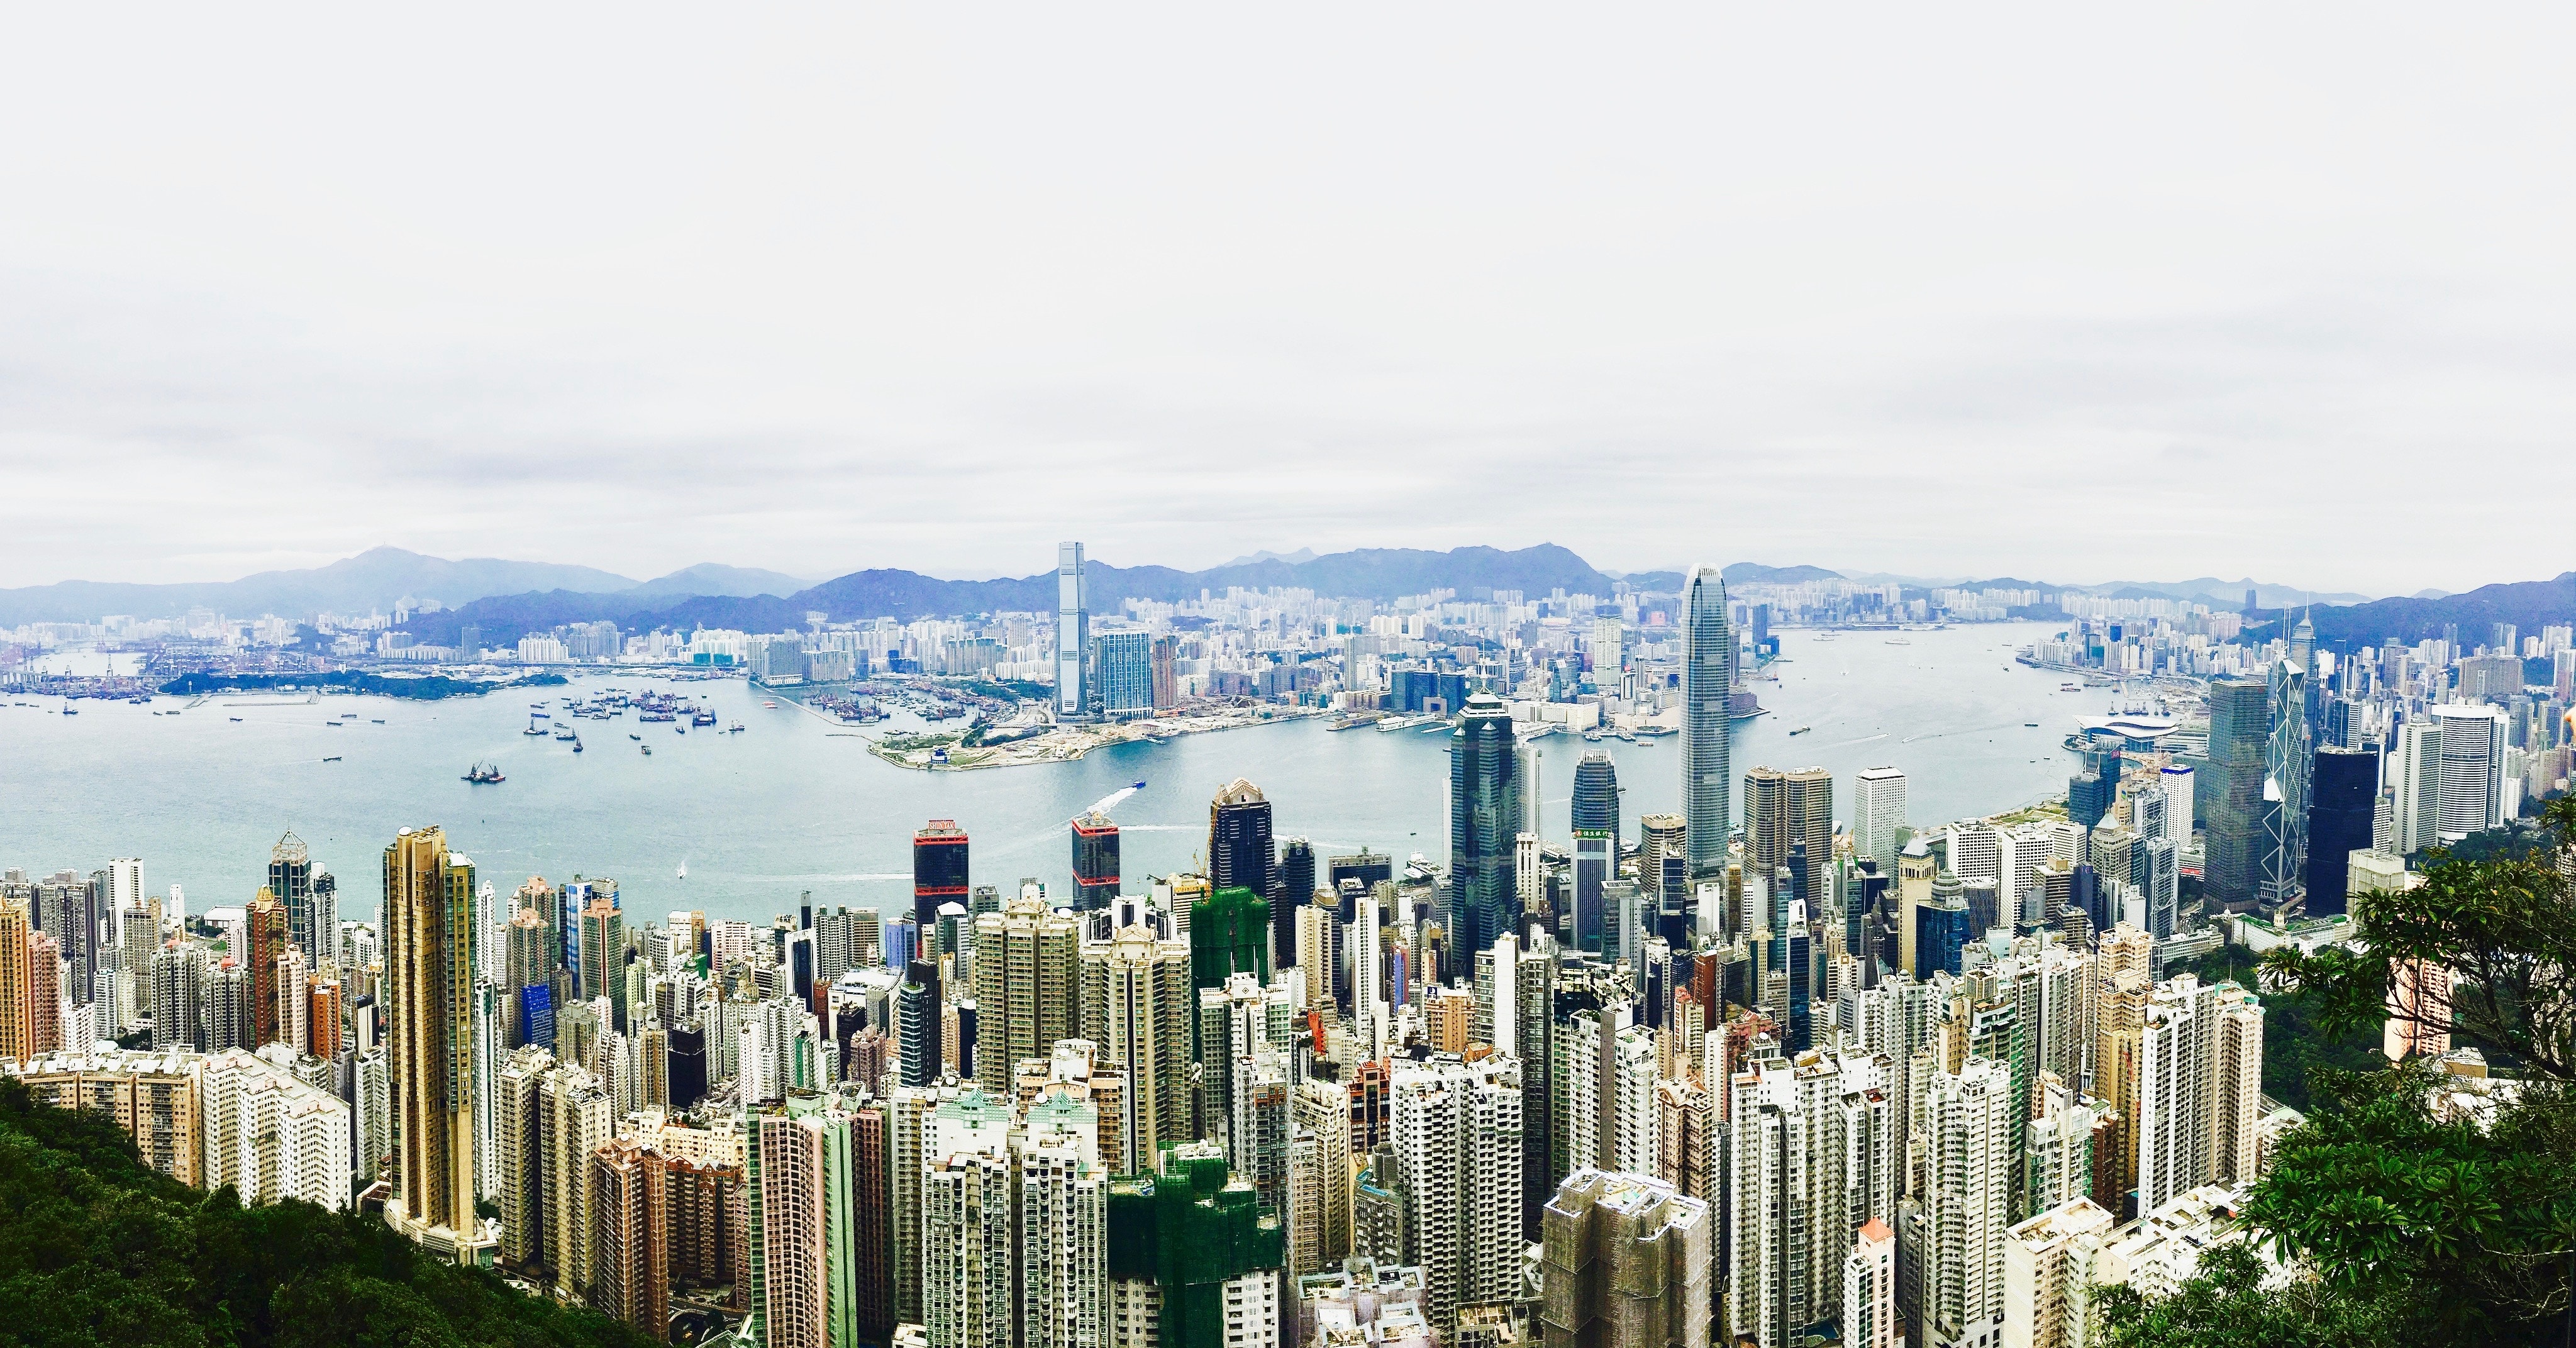 Companies hong kong. Гонконг. Городской пейзаж фото. Гонконгская компания. Архитектура предприятий Гонконга.